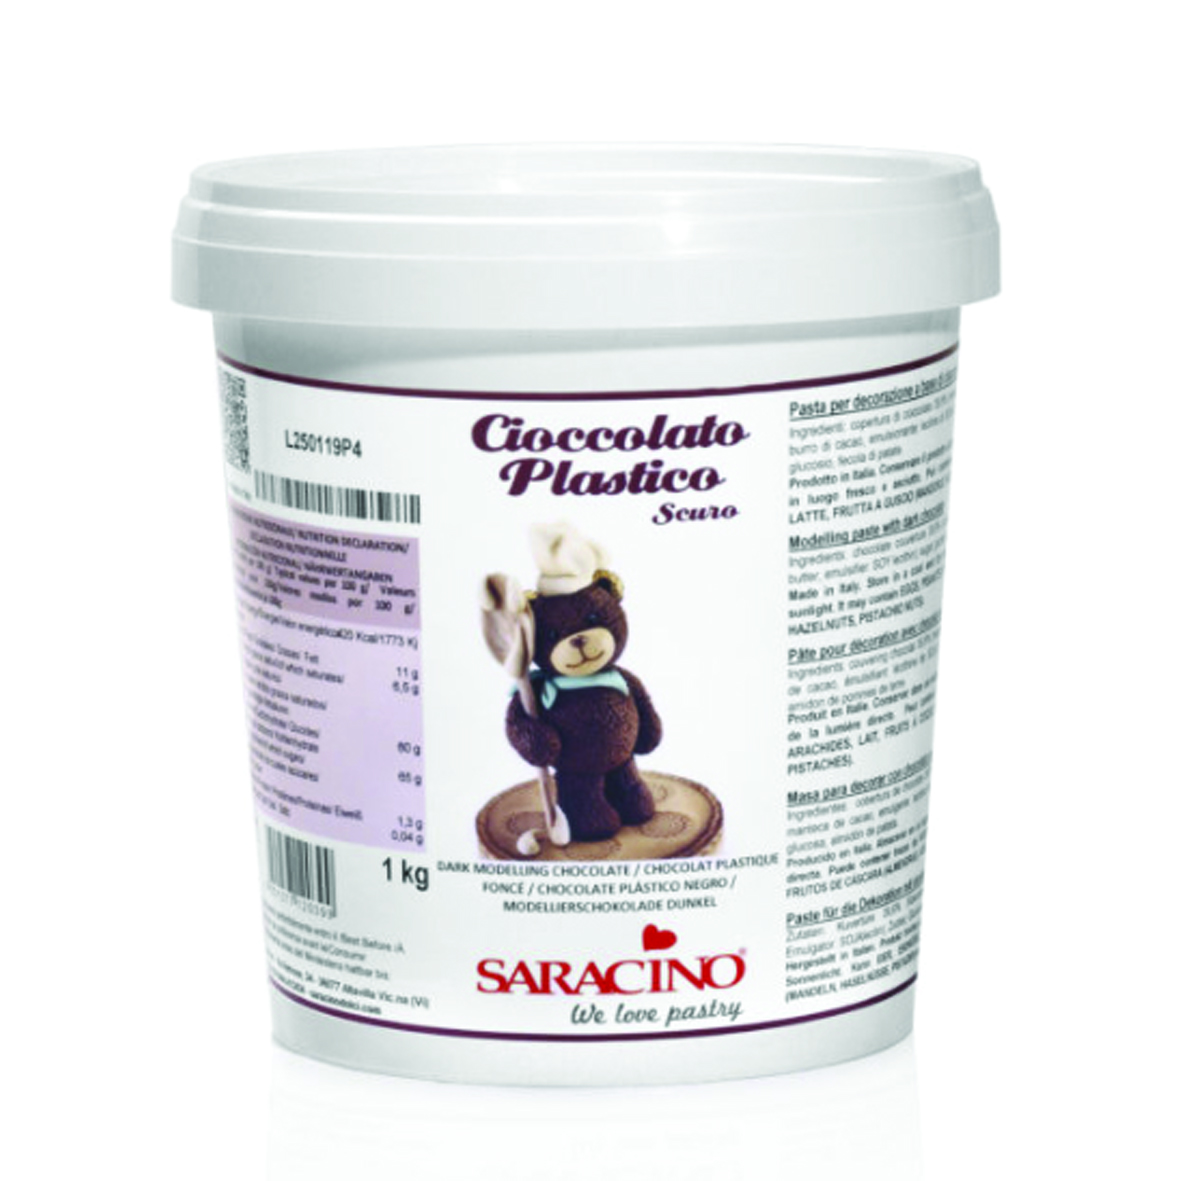  Foto: Saracino cioccolato plastico scuro 1 kg